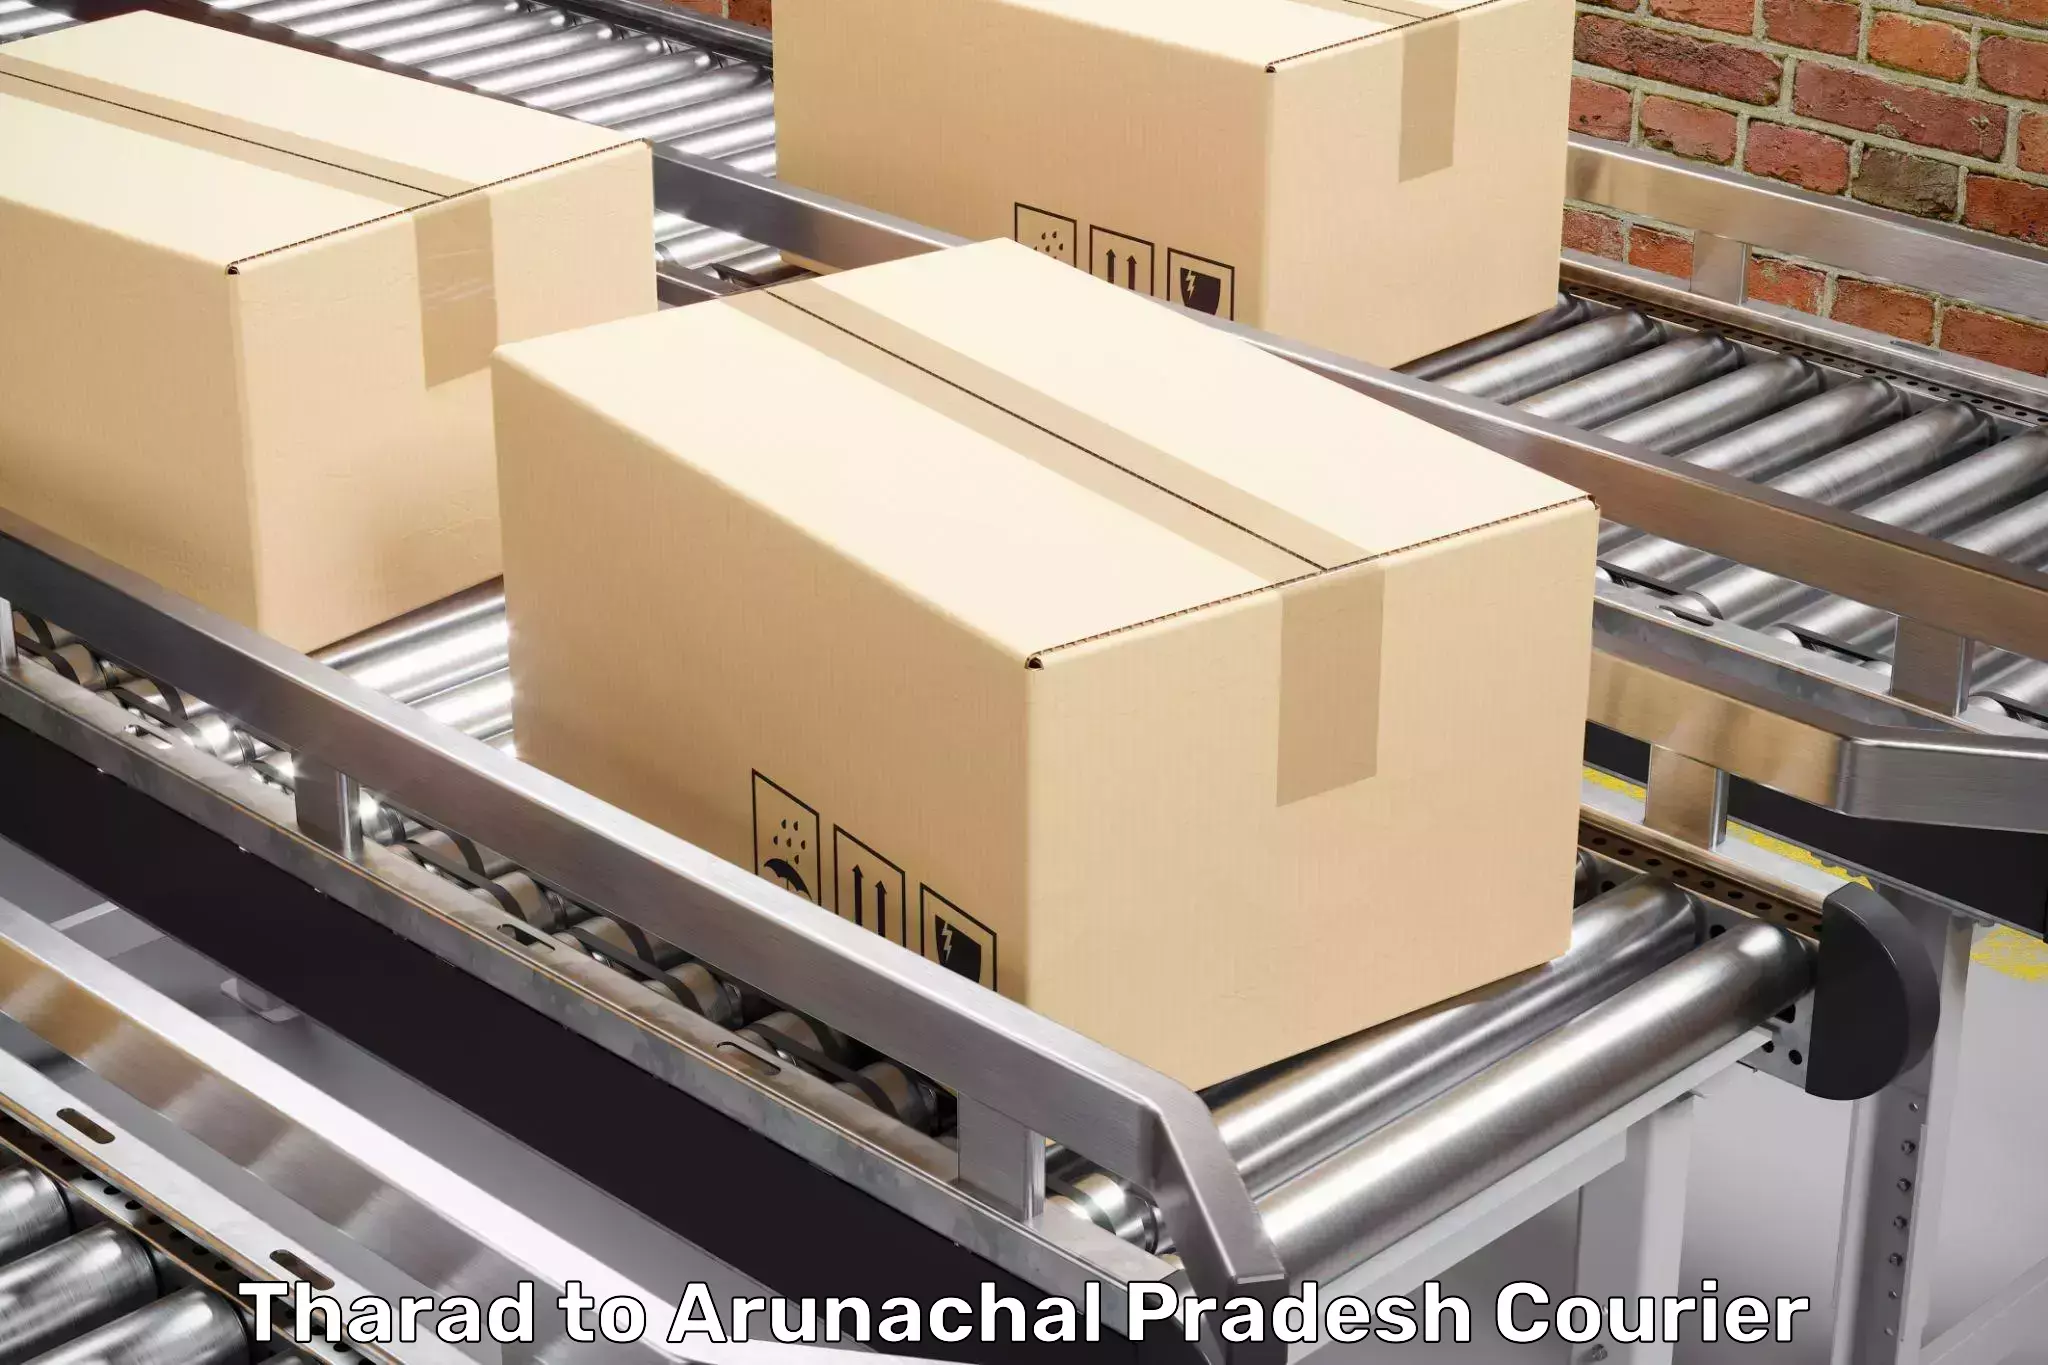 Furniture moving experts Tharad to Arunachal Pradesh